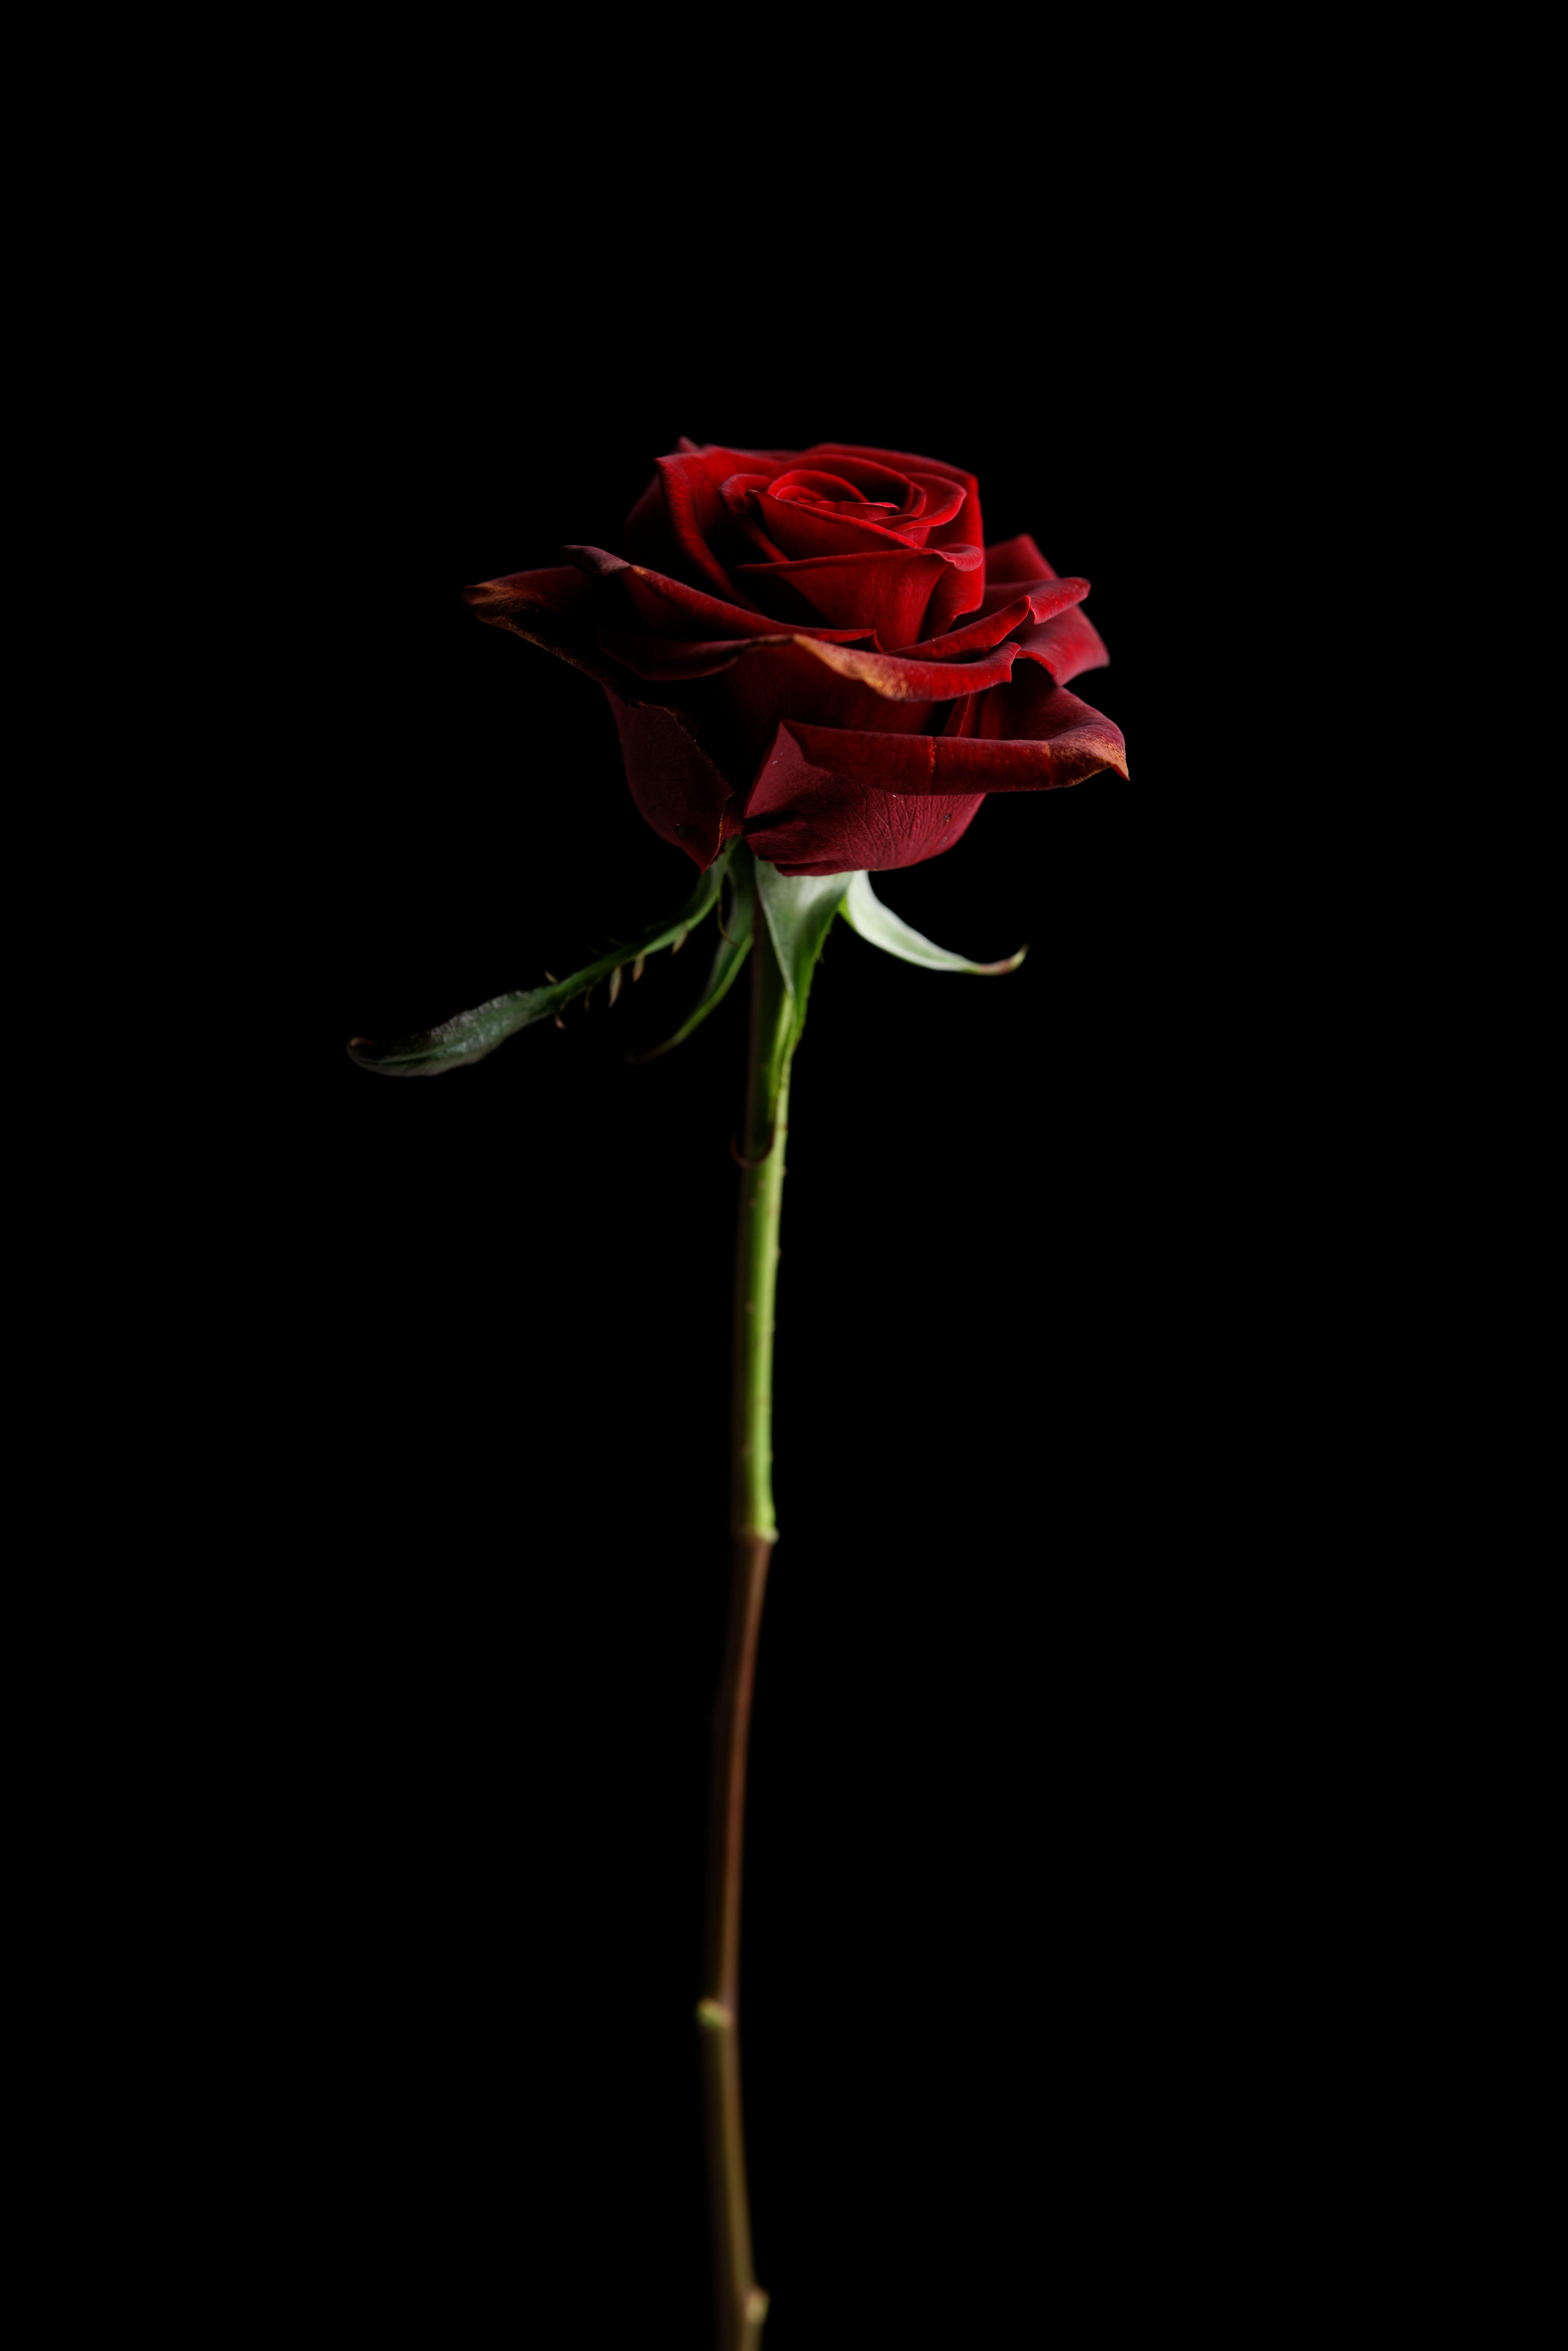 Một bông hoa hồng đỏ đặc biệt với nền đen sẽ khiến bạn cảm thấy cuốn hút và quyến rũ. Hình ảnh này sẽ khiến bạn cảm giác như đang được sống trong một tác phẩm nghệ thuật với sự pha trộn màu đỏ và đen đầy quyến rũ.